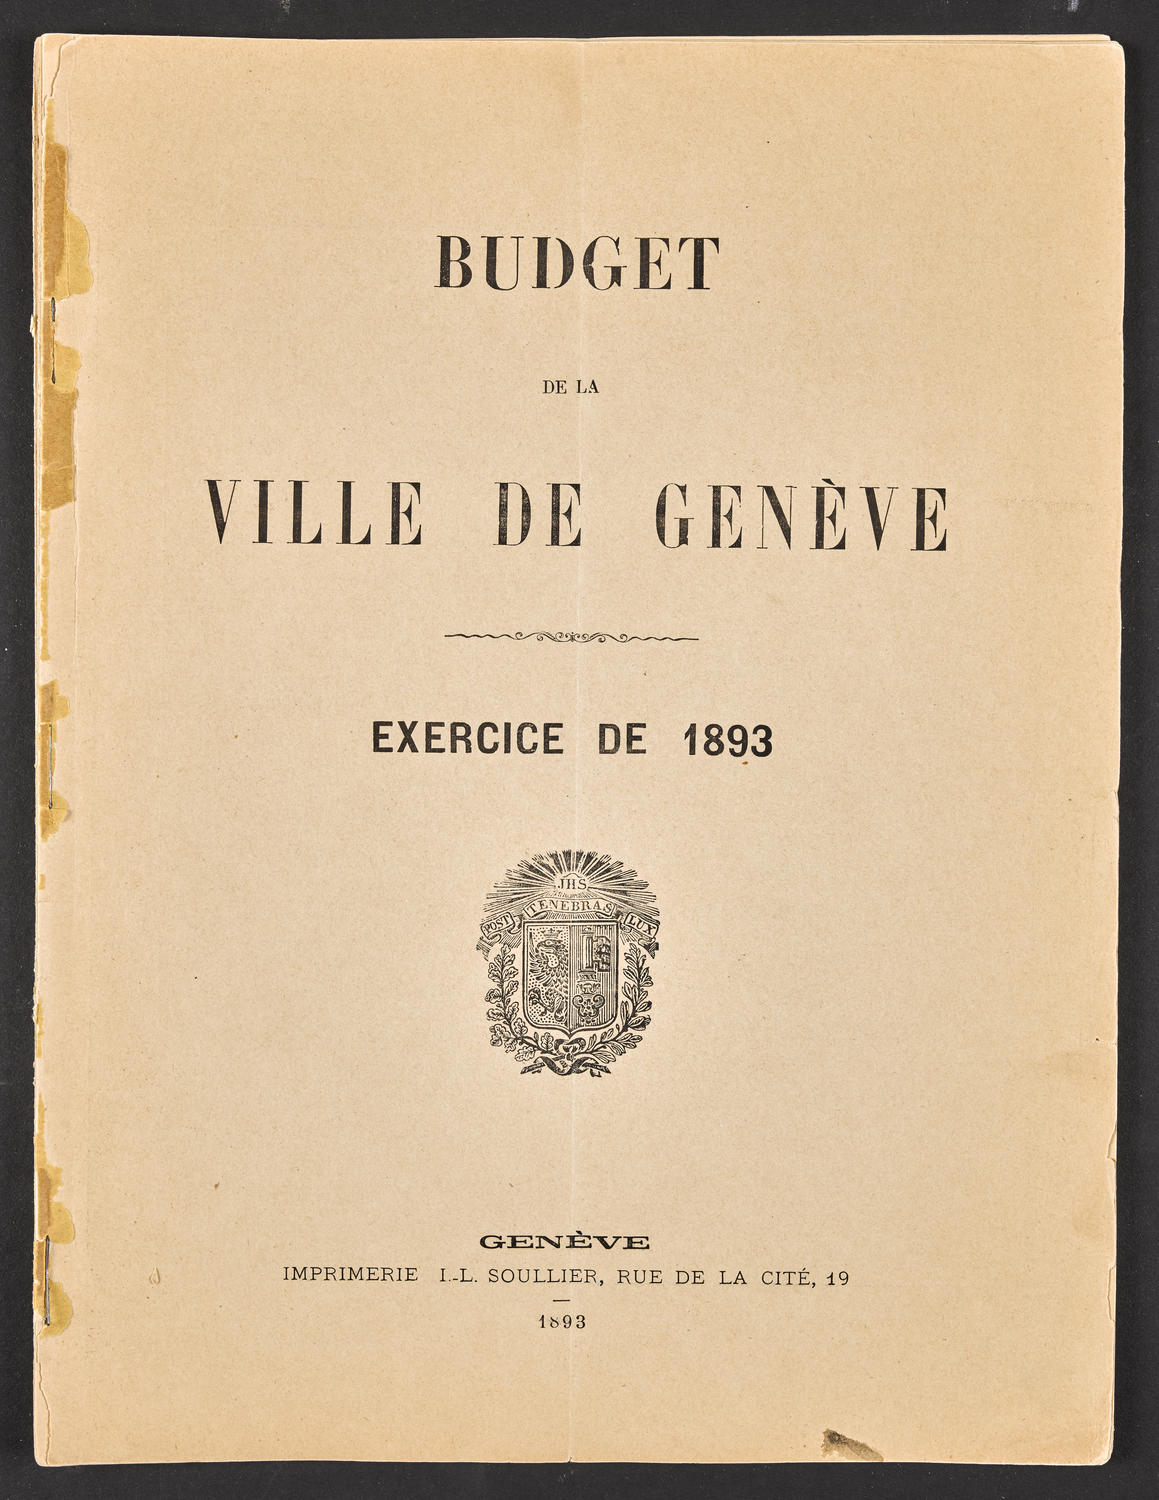 Budget de la Ville de Genève - Exercise de 1893, page 1 of 32